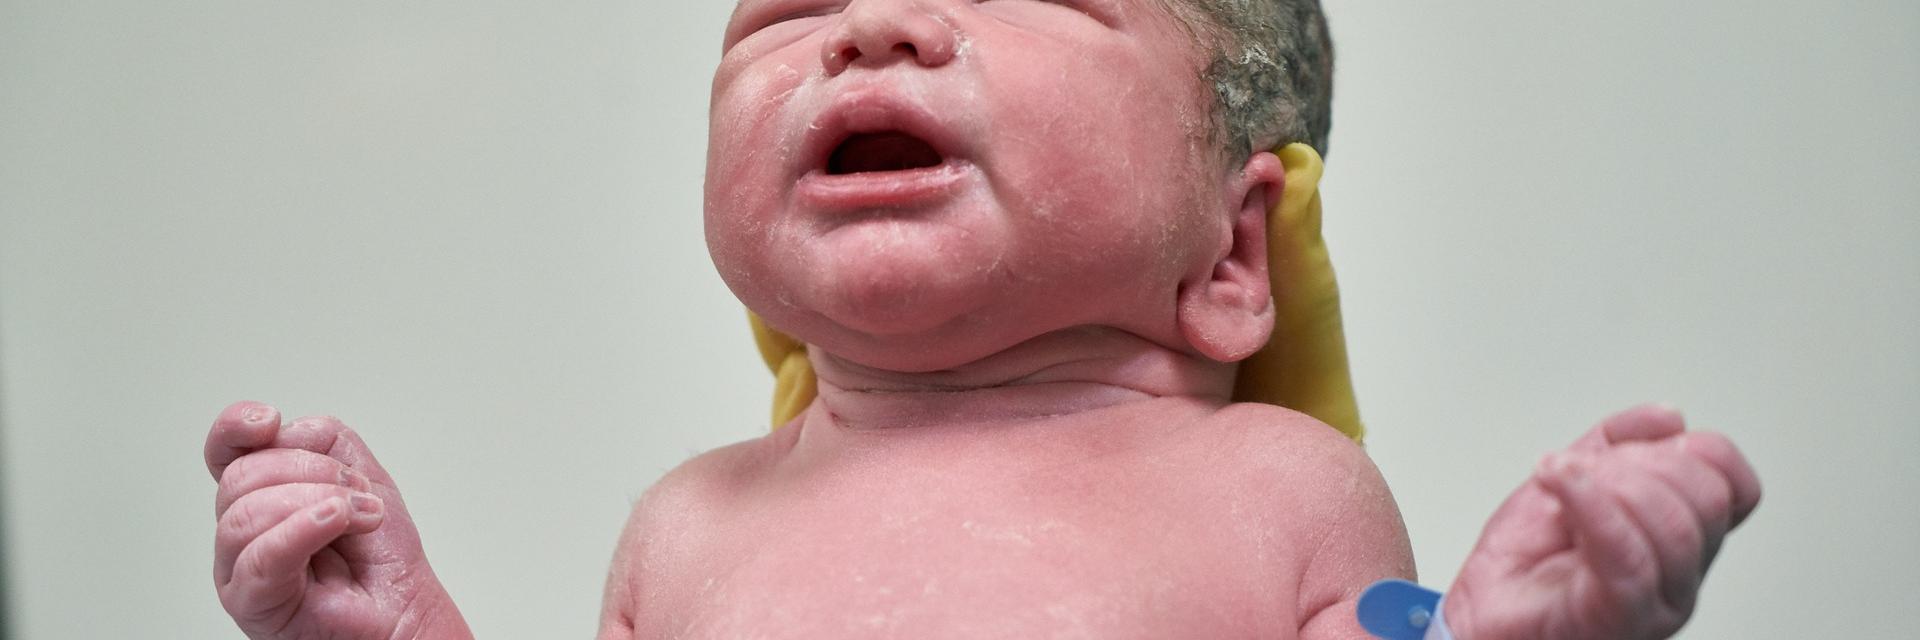 Pasgeboren baby met gespreide armen.